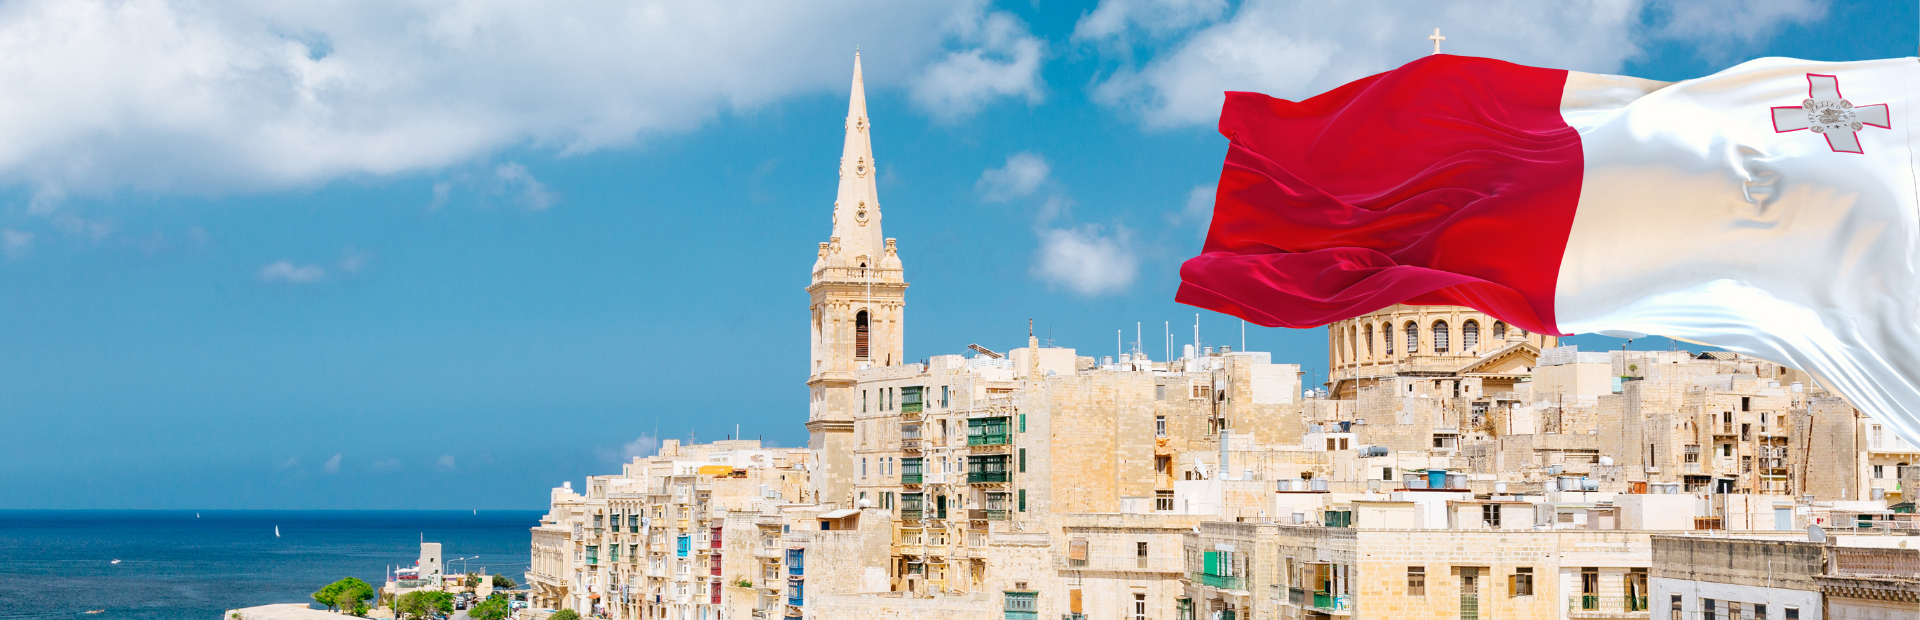 Đầu tư định cư Malta